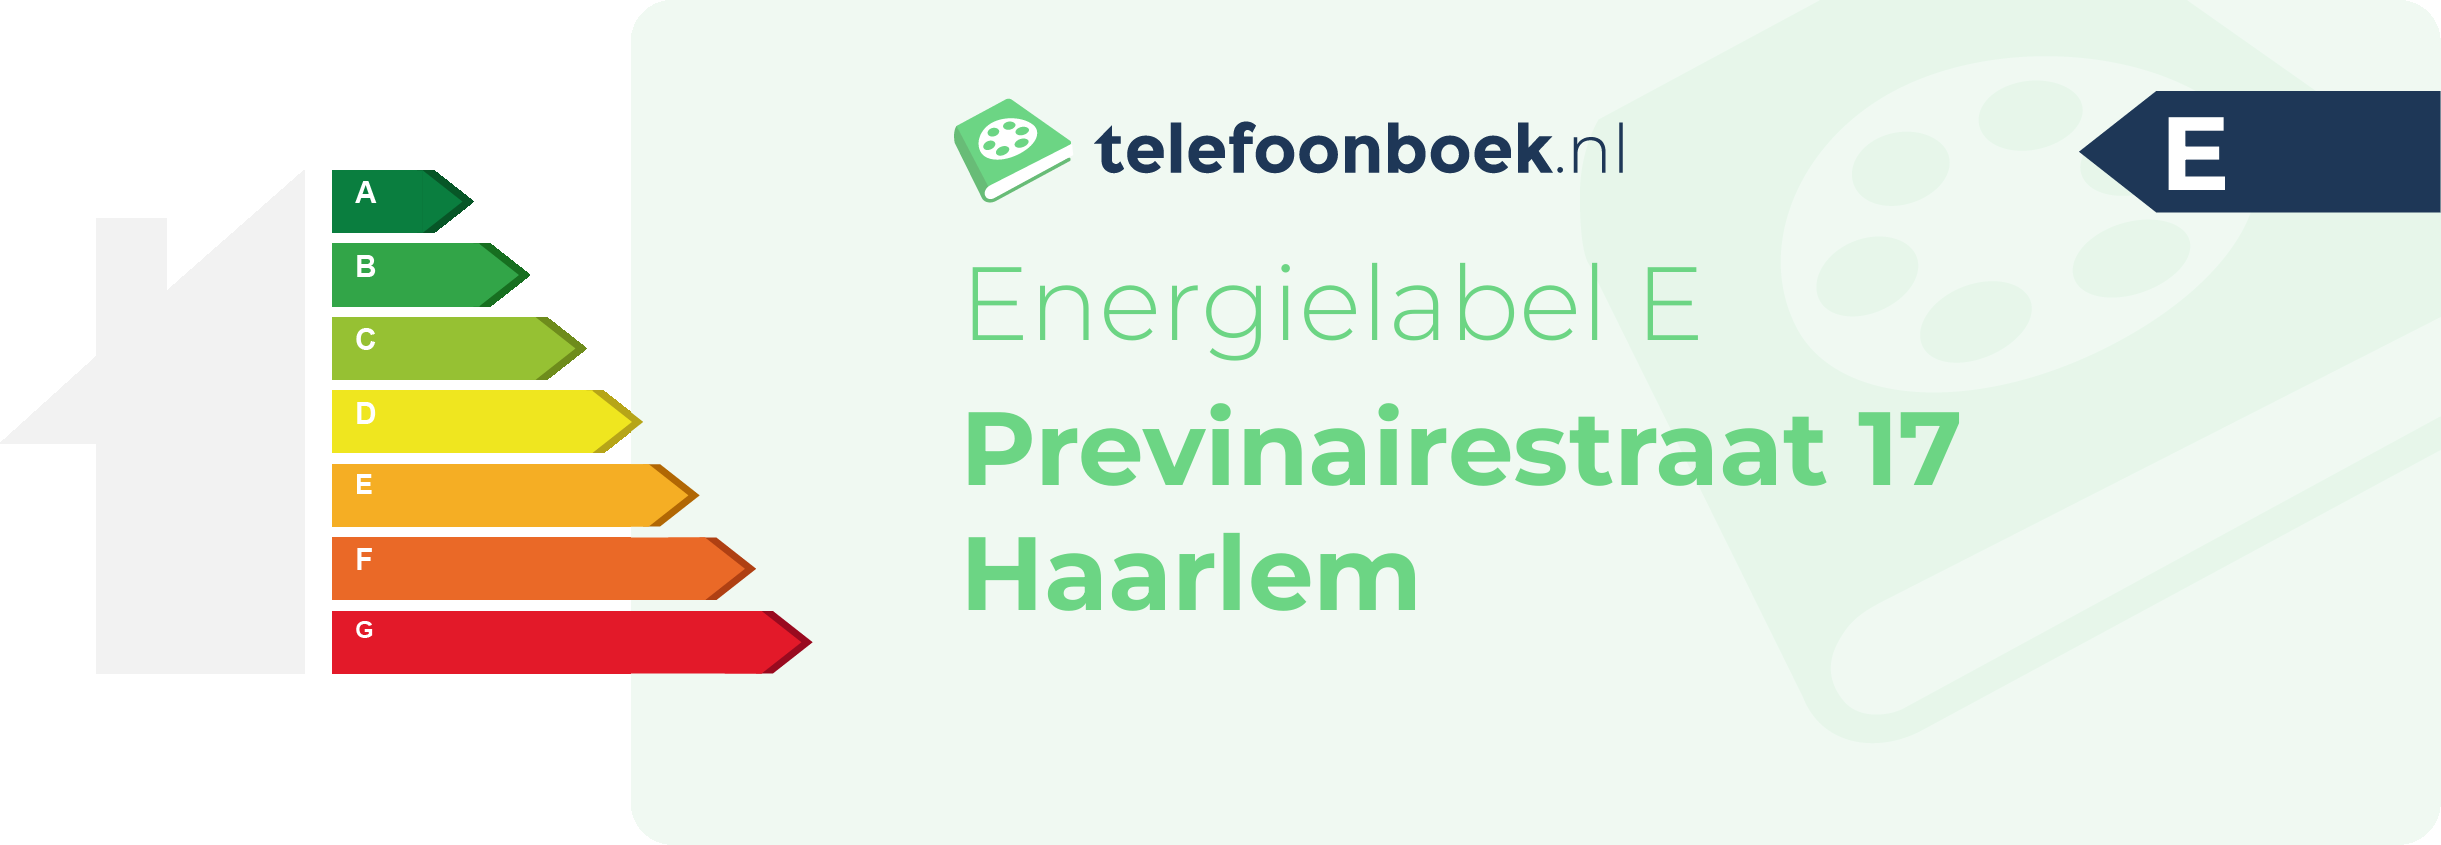 Energielabel Previnairestraat 17 Haarlem